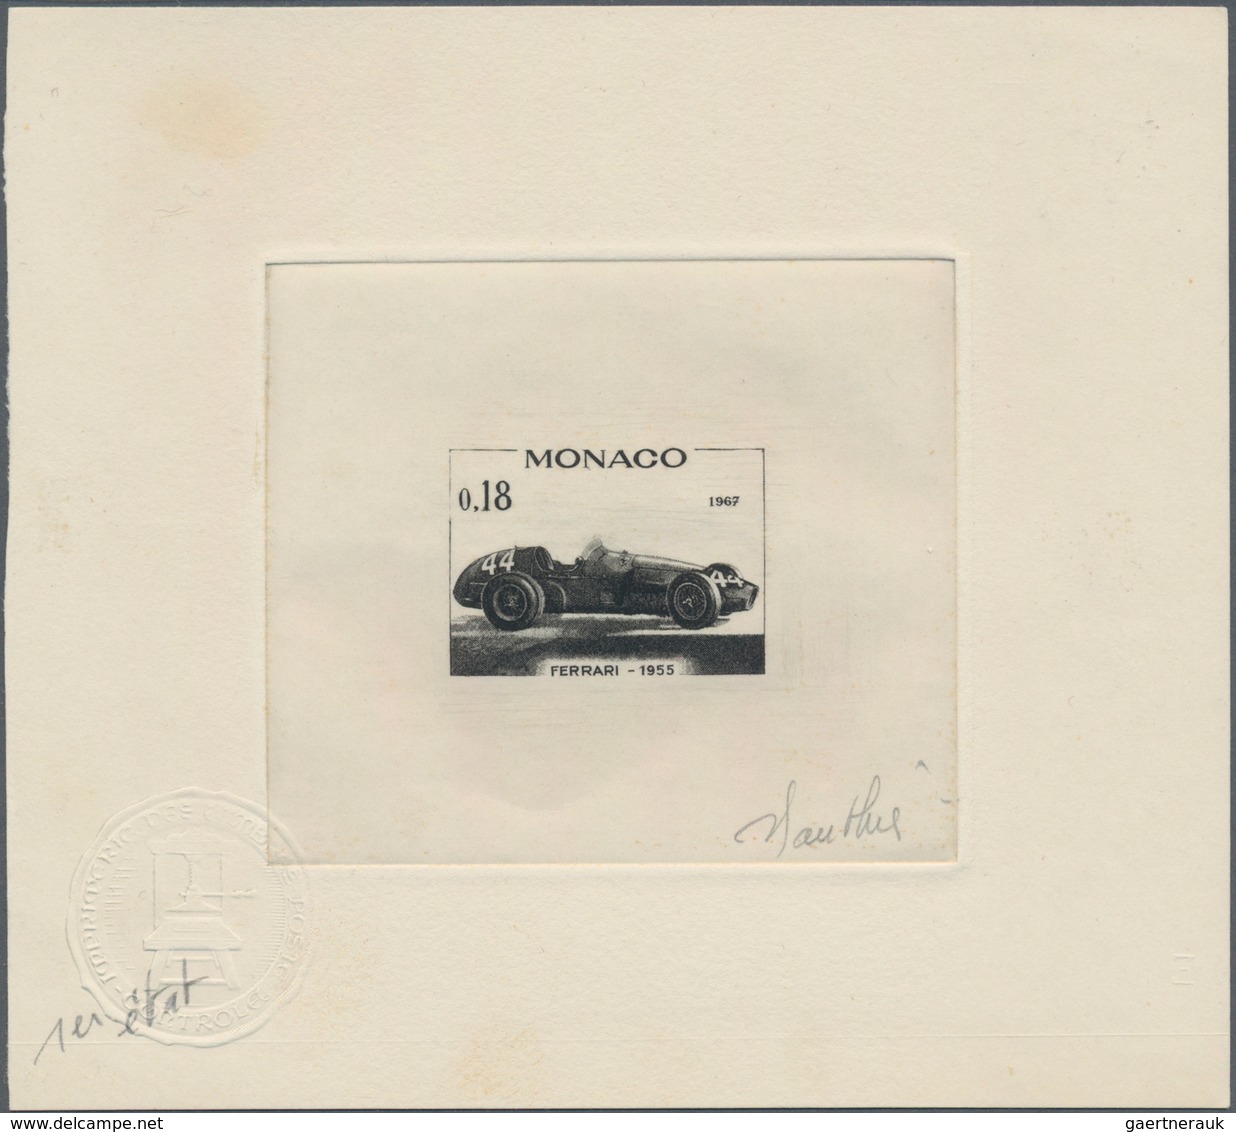 Thematik: Verkehr-Auto / traffic-car: 1961/1975, Monaco. Lot of 9 Epreuves d'artiste signée (8 times